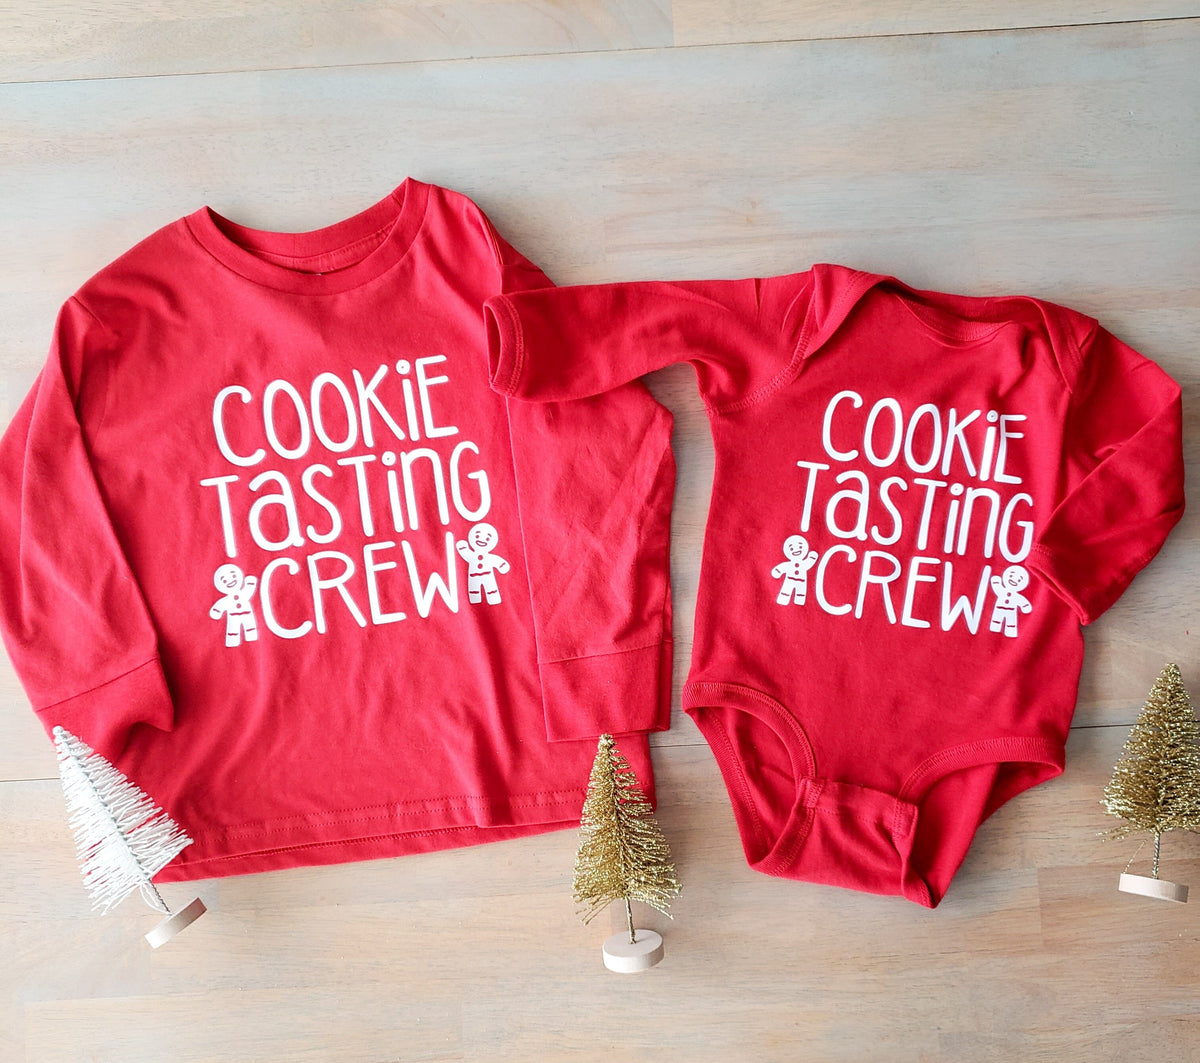 Cookie Tasting Crew Tshirt